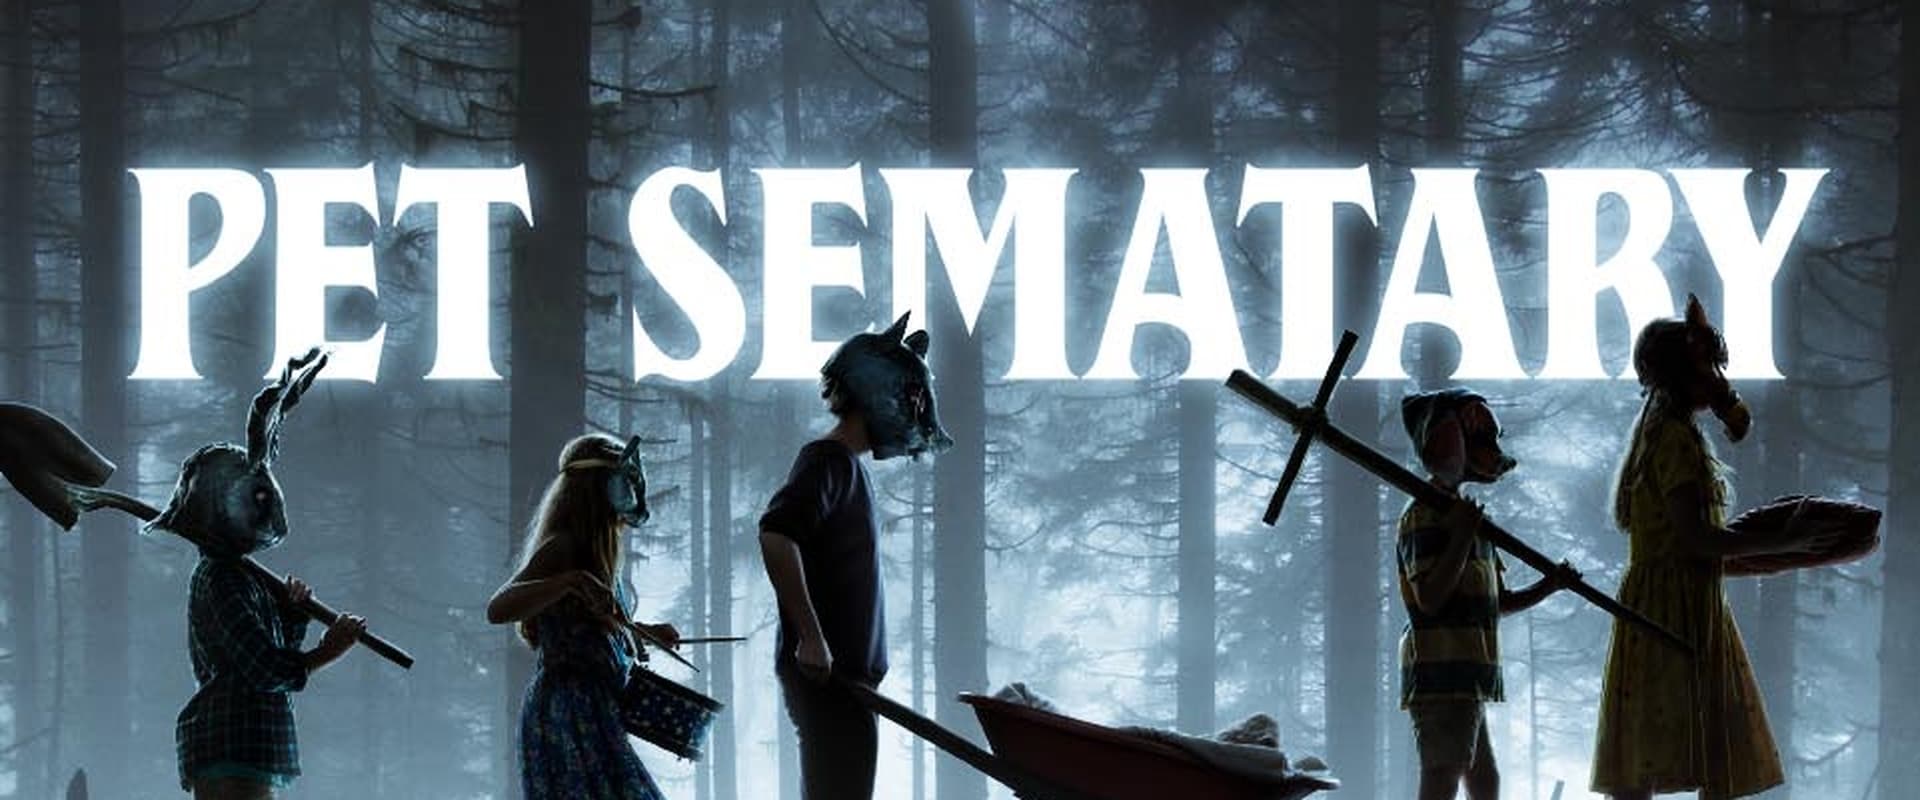 Pet Sematary (Cimitero Vivente) [HD] (2019)